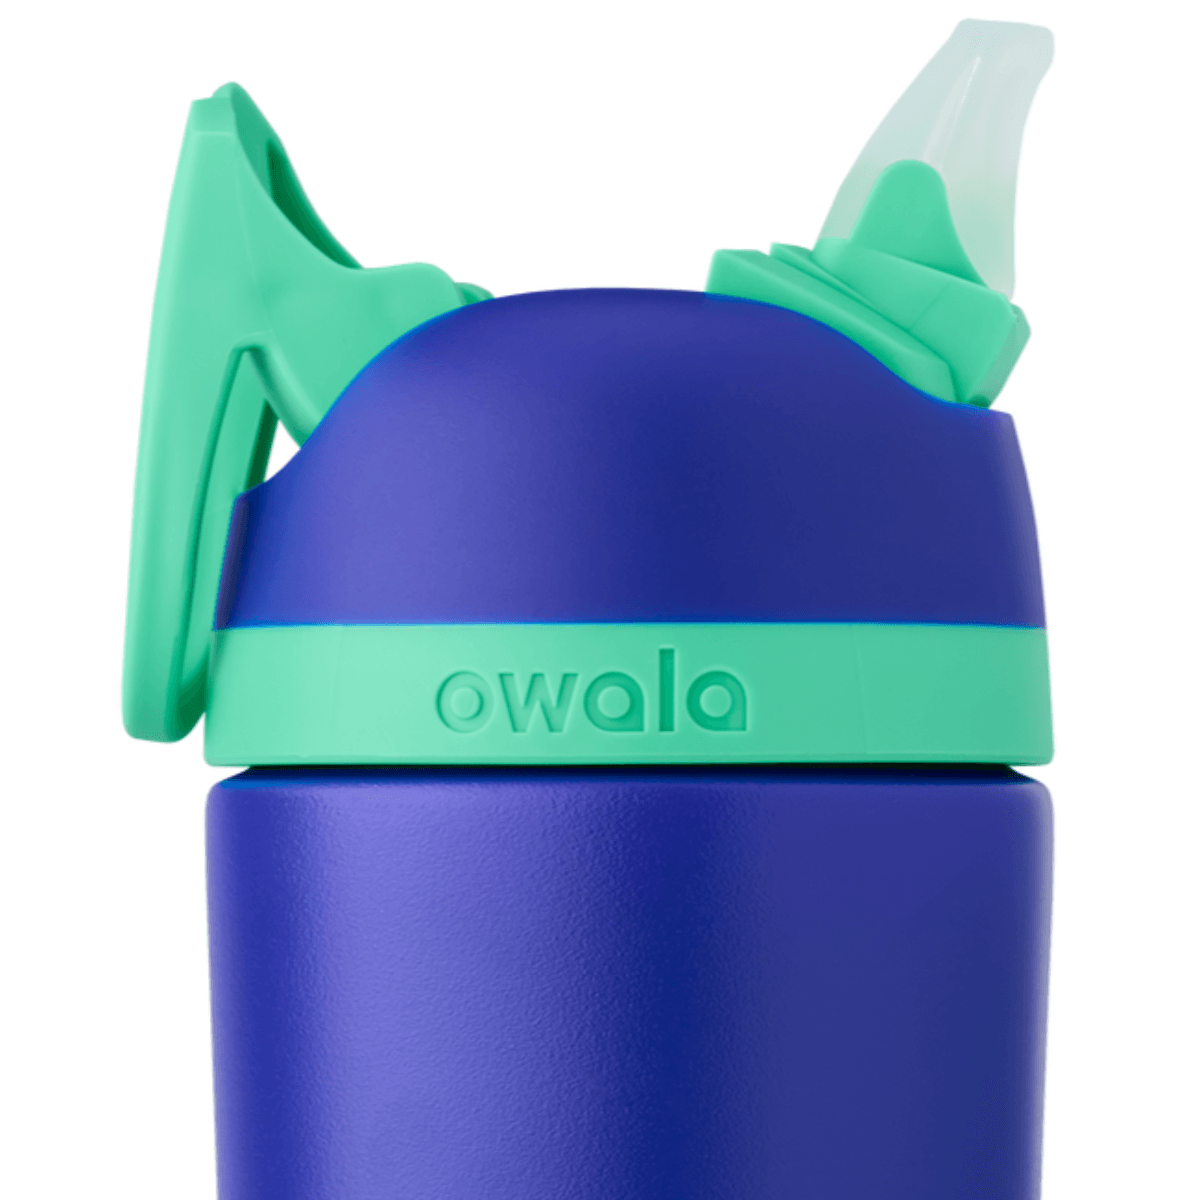 Owala 16oz Kids' Free Sip Stainless Steel Water Bottle - Sleek